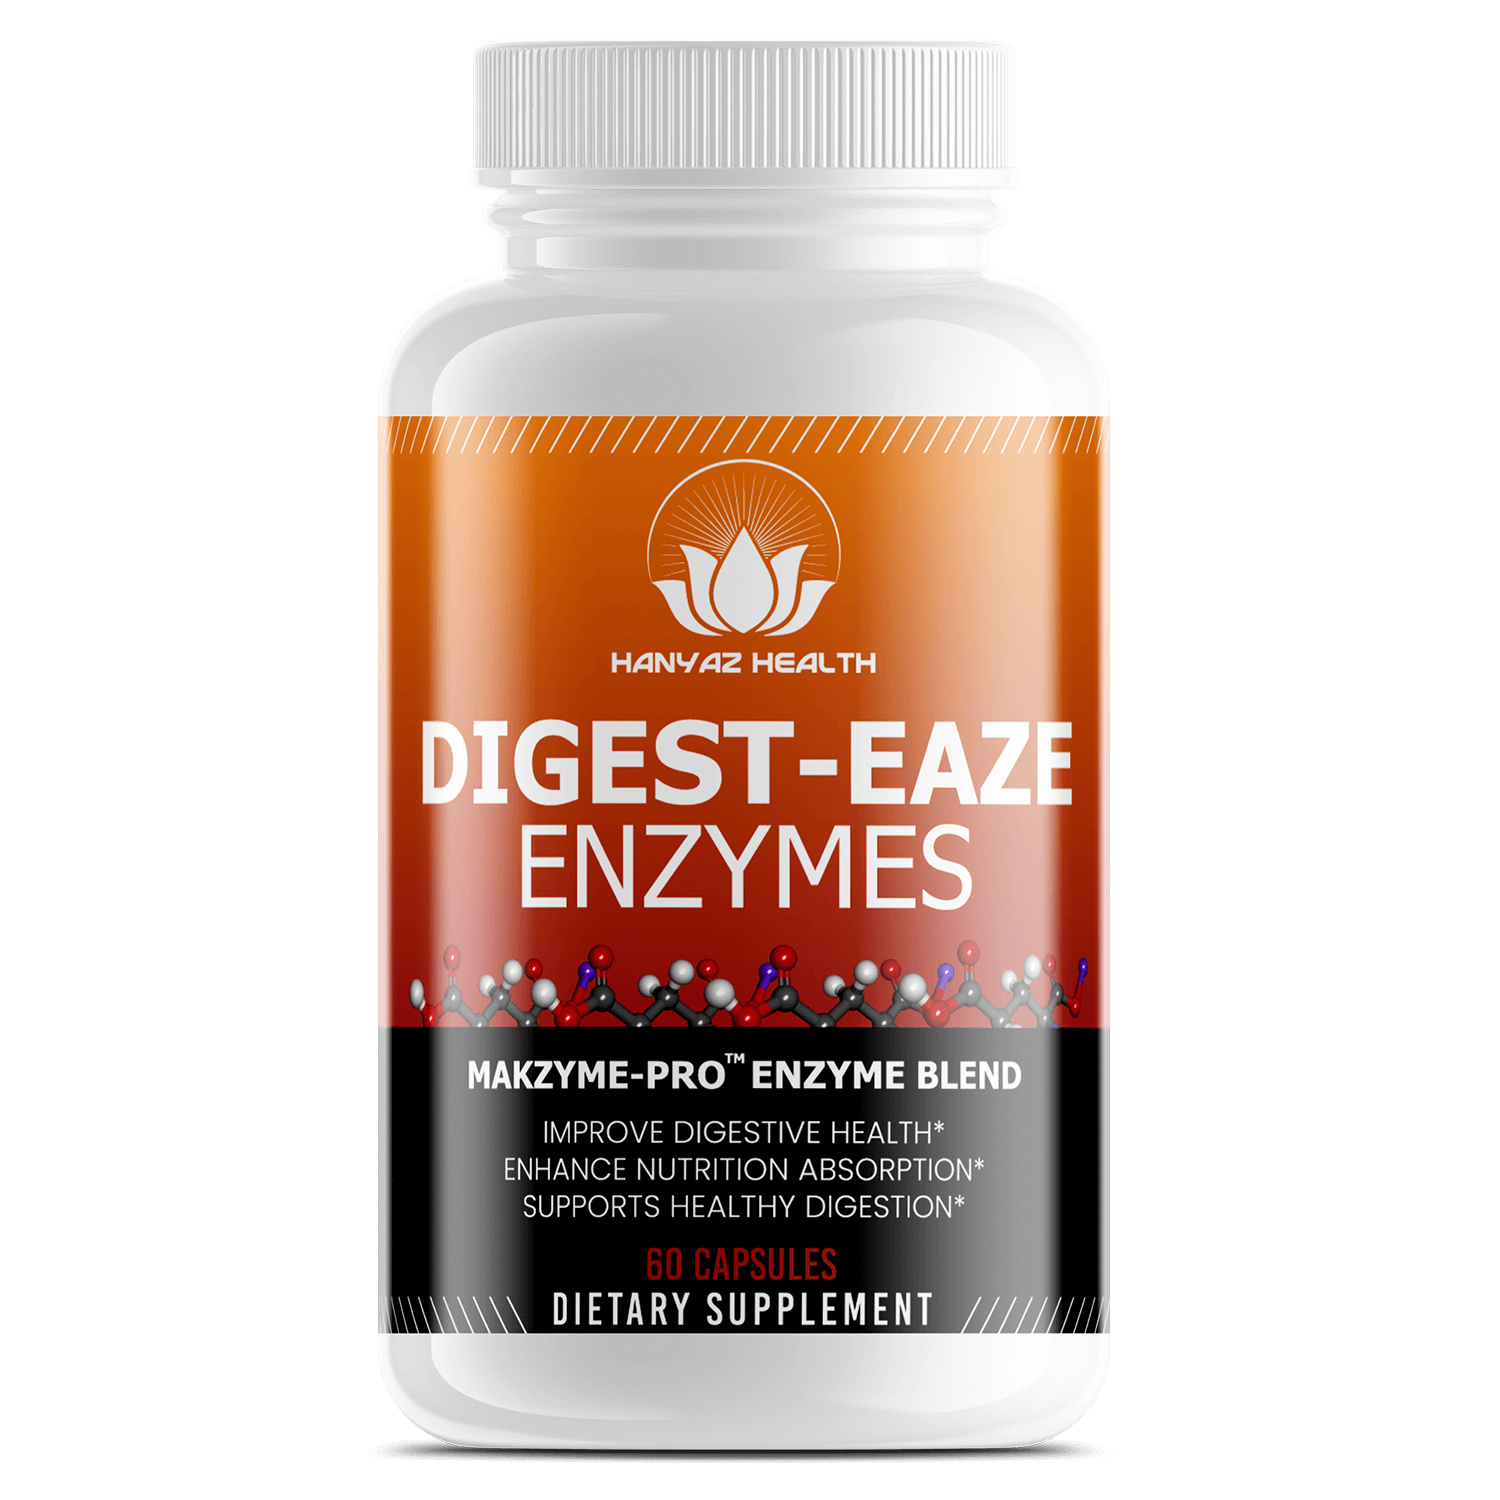 DIGEST EAZE Enzymes